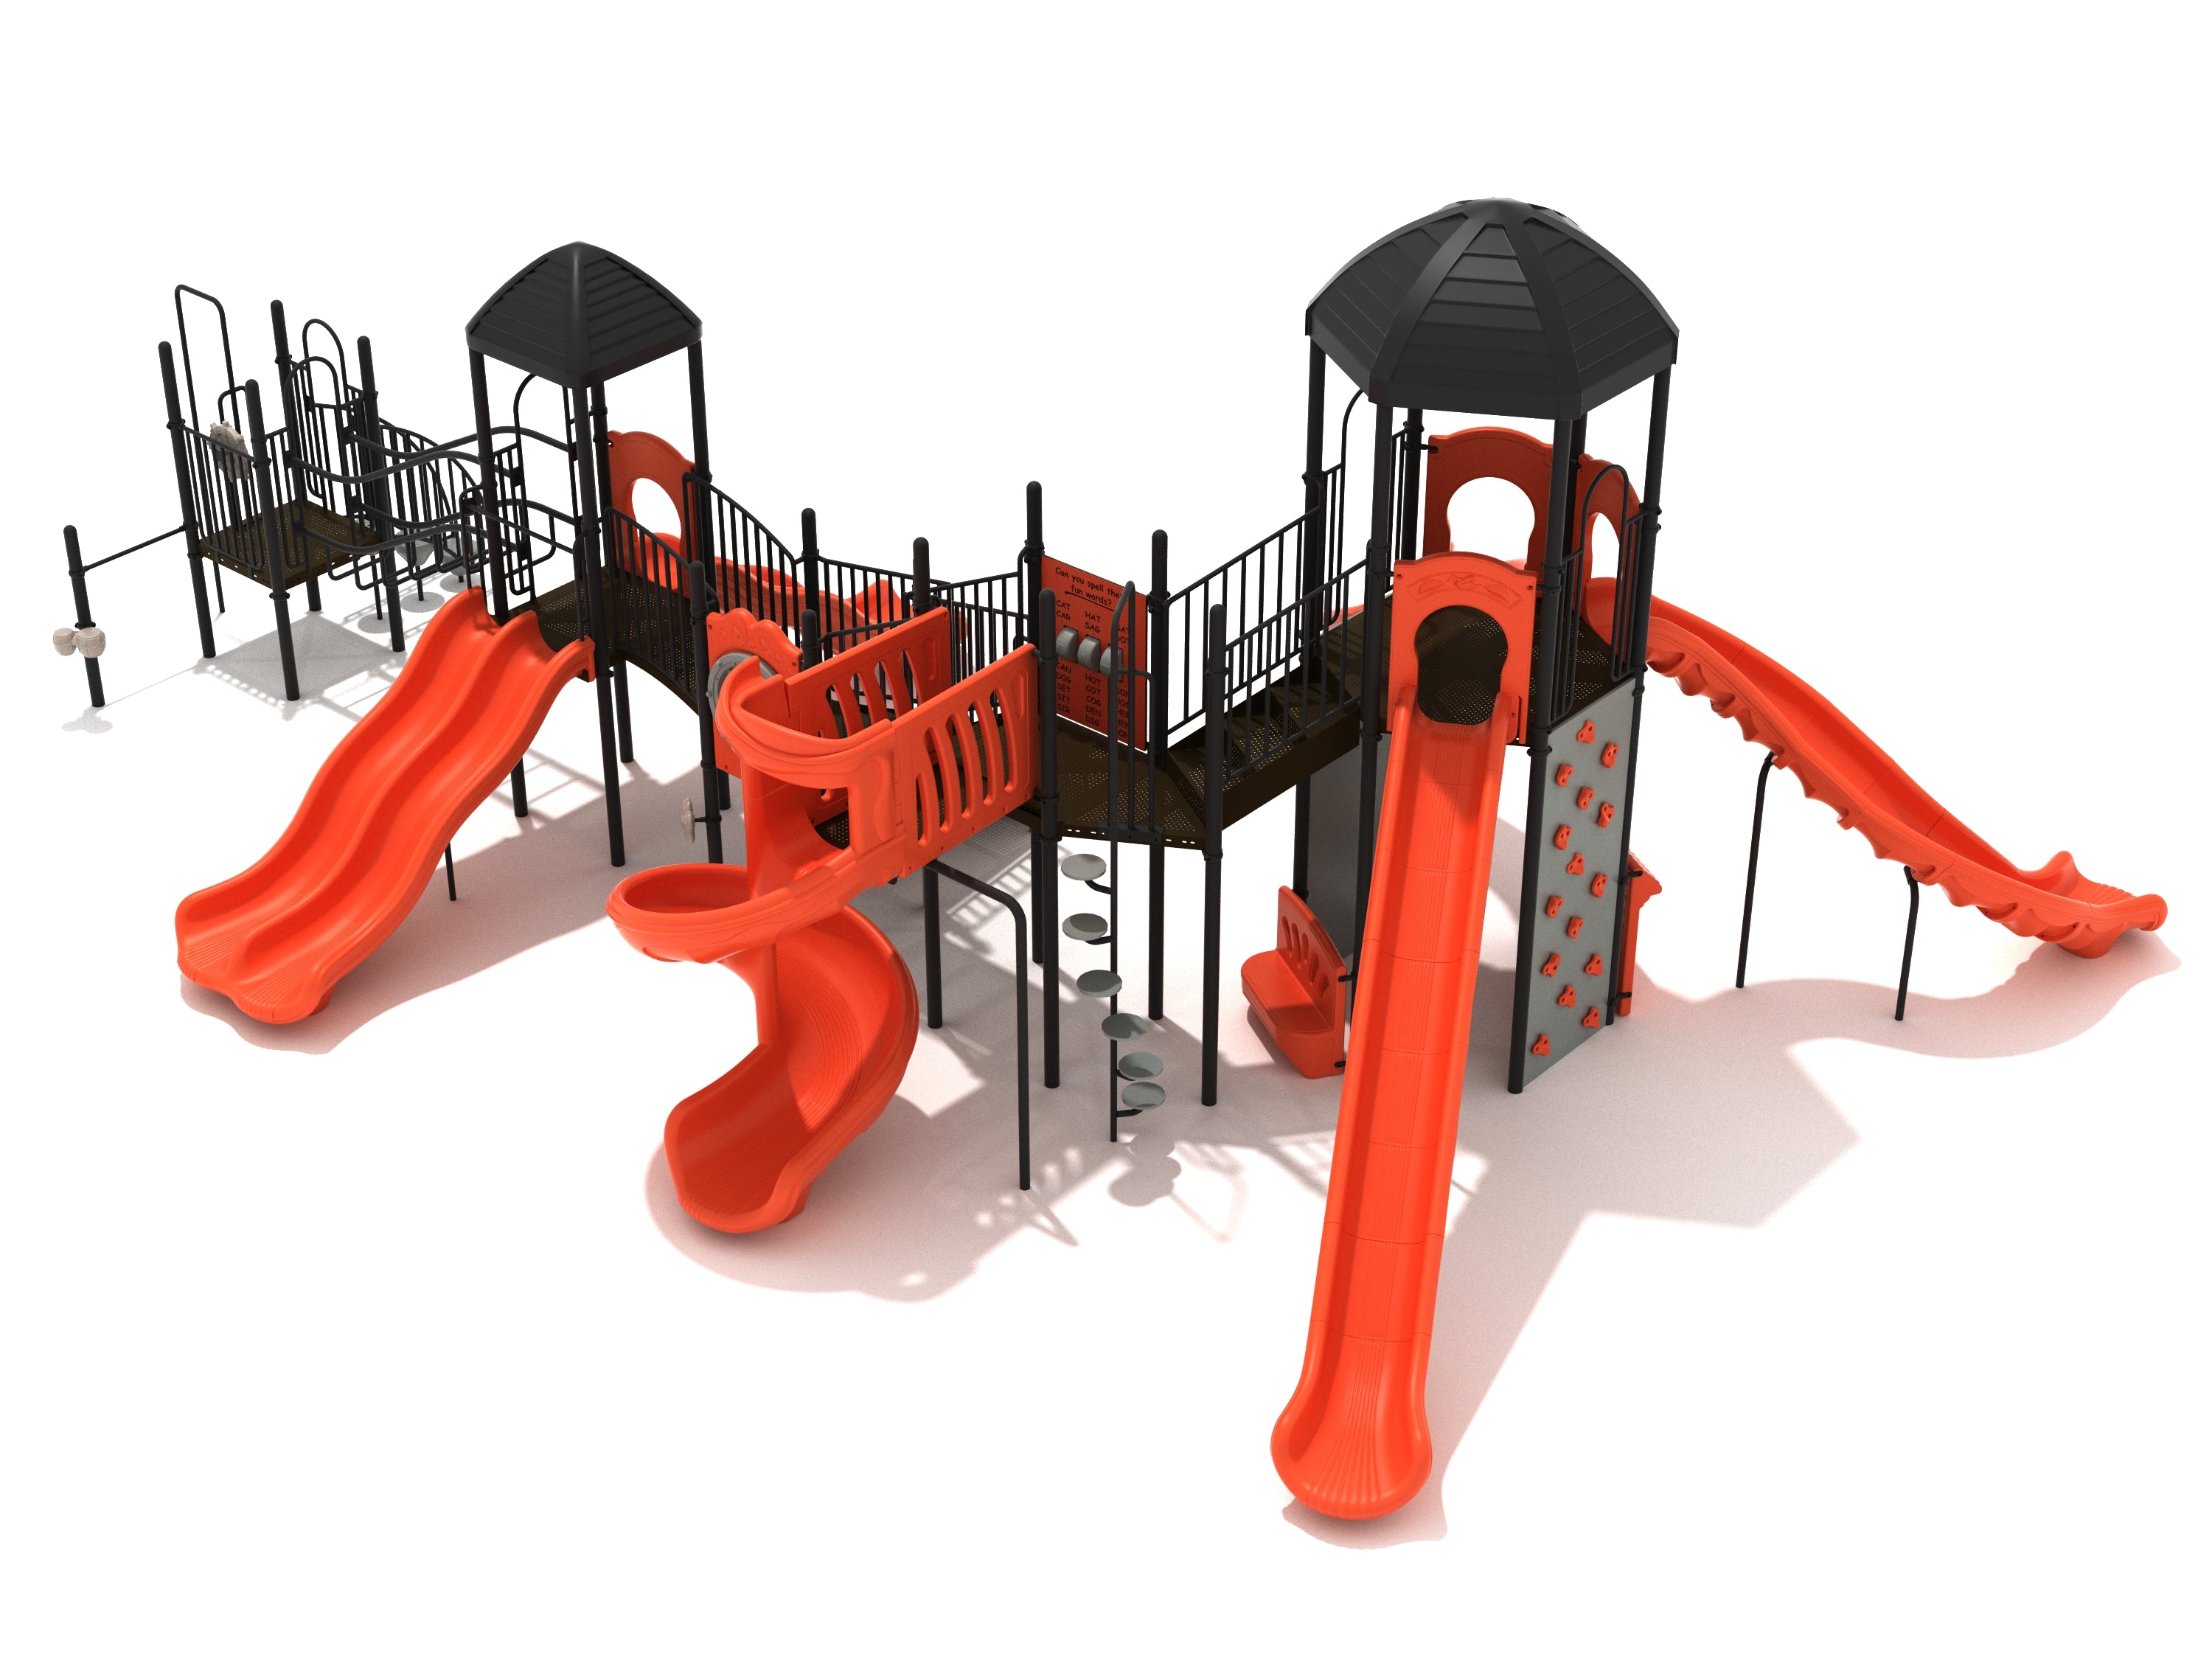 Wood's Cross Playground